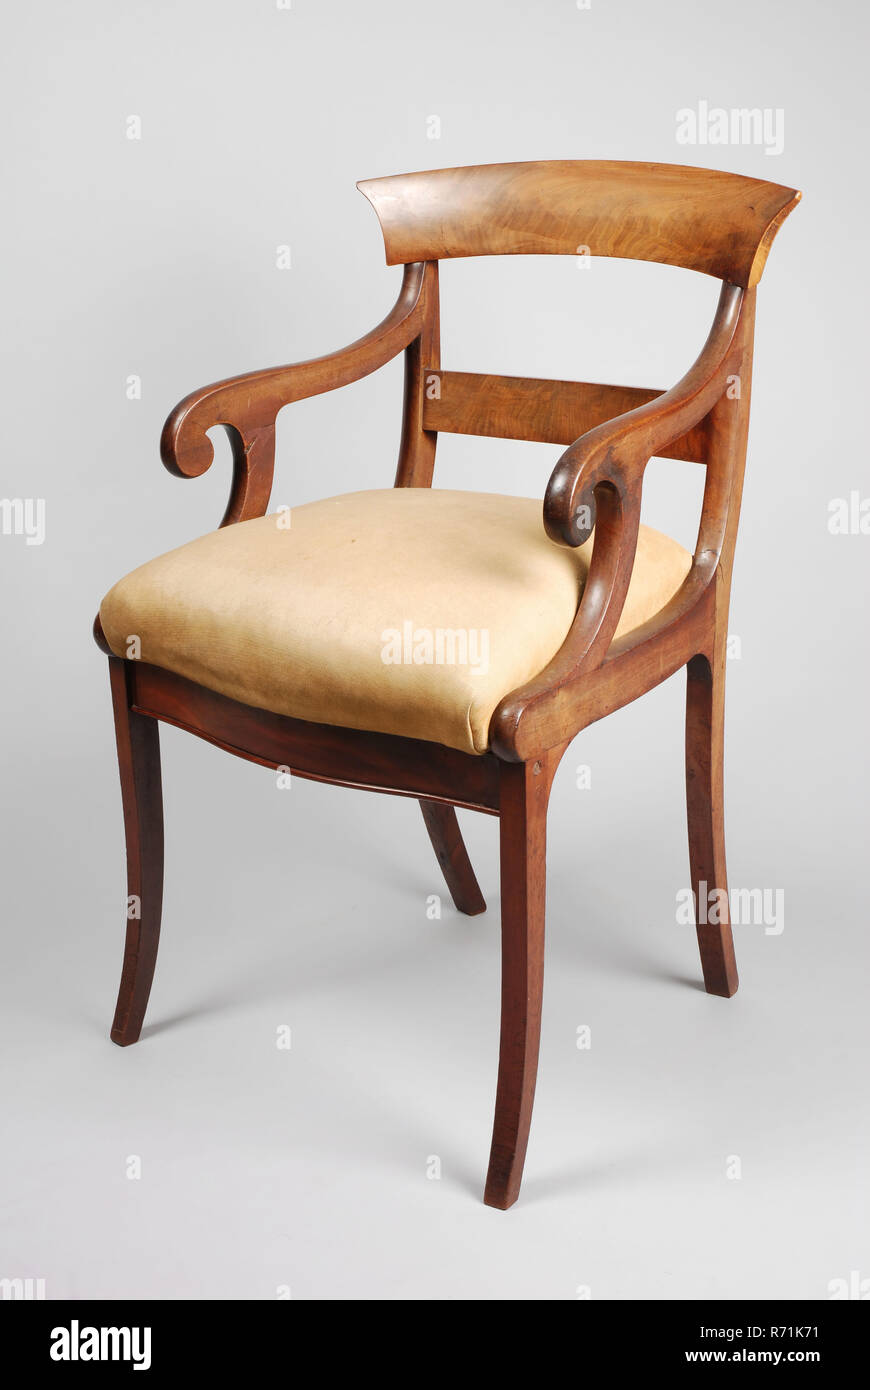 Silla de oficina Biedermeier de caoba, asientos de sillas de oficina  muebles diseño de interiores Muebles de madera caoba elmwood lana de  coníferas, tapizados de lana de color ocre en el asiento